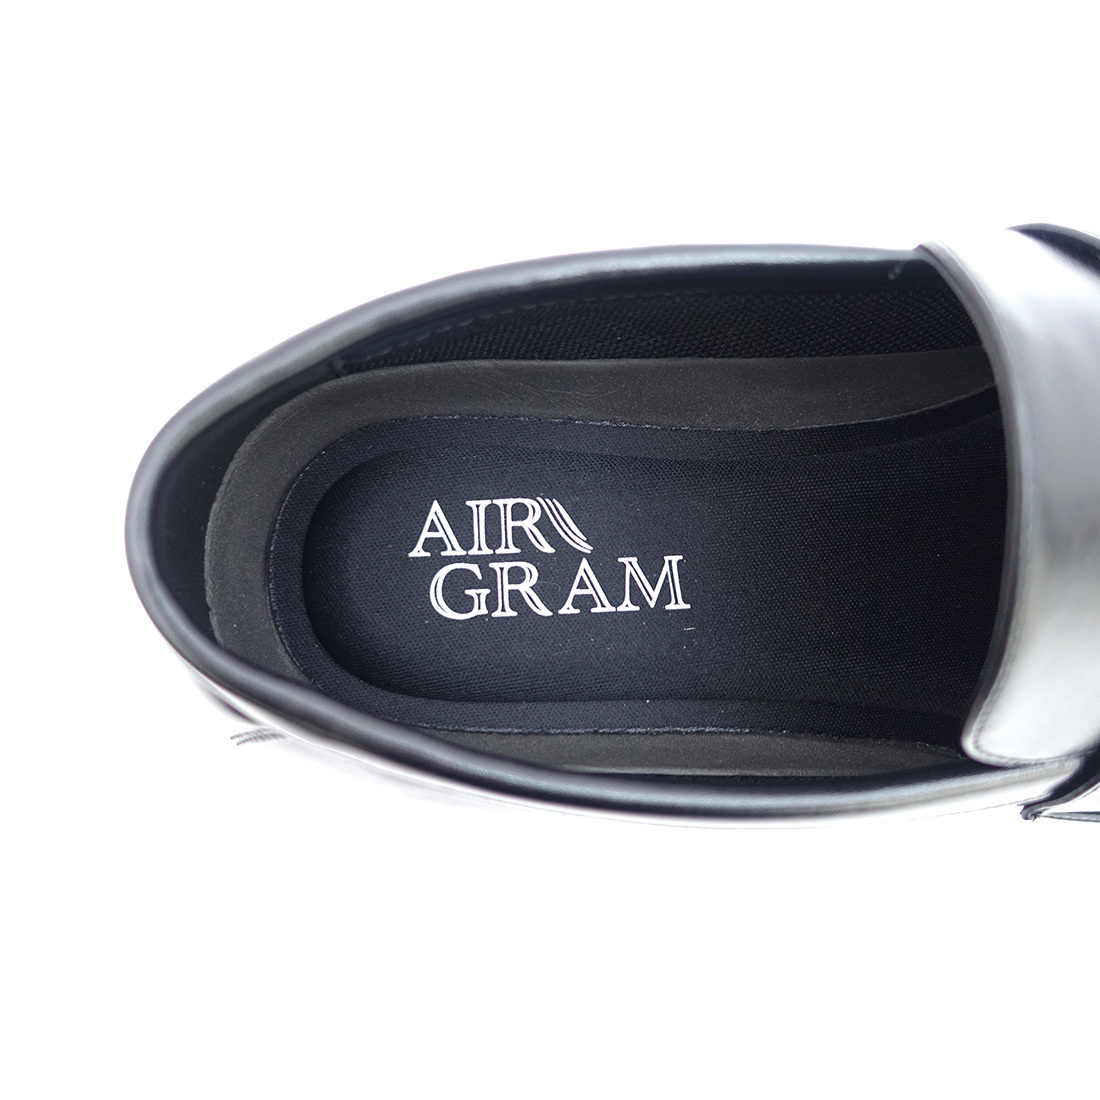 ▲AIR GRAM エアグラム メンズ ローファー ビジネスシューズ 1723 メンズ 革靴 ブラック Black 黒 25.5cm (0910010699-bk-s255)_画像8